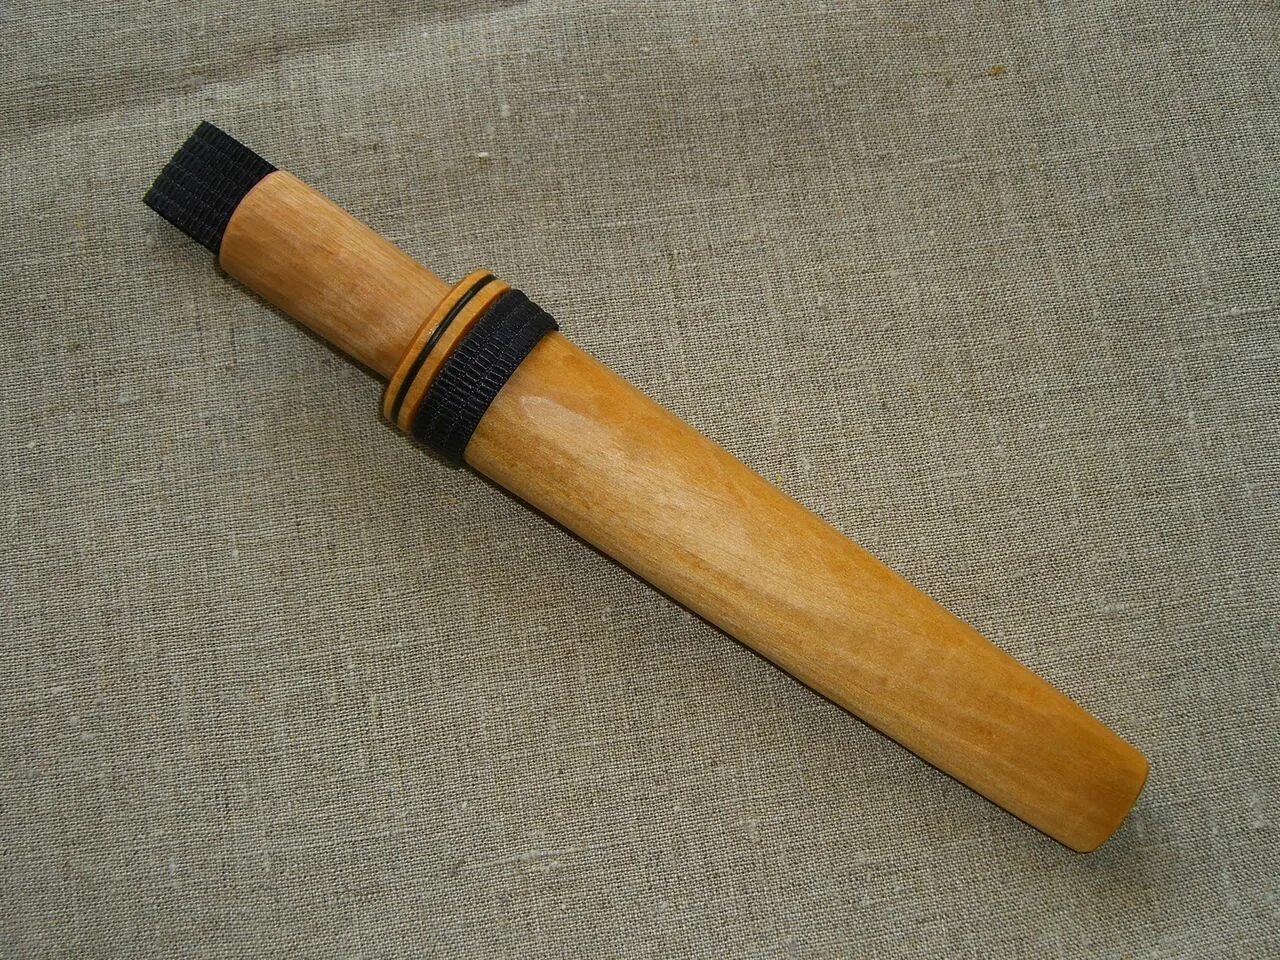 Деревянные ножны. Деревянный нож в ножнах. Старинная деревянная ножены. Старинный кустарный нож с деревянными ножнами.